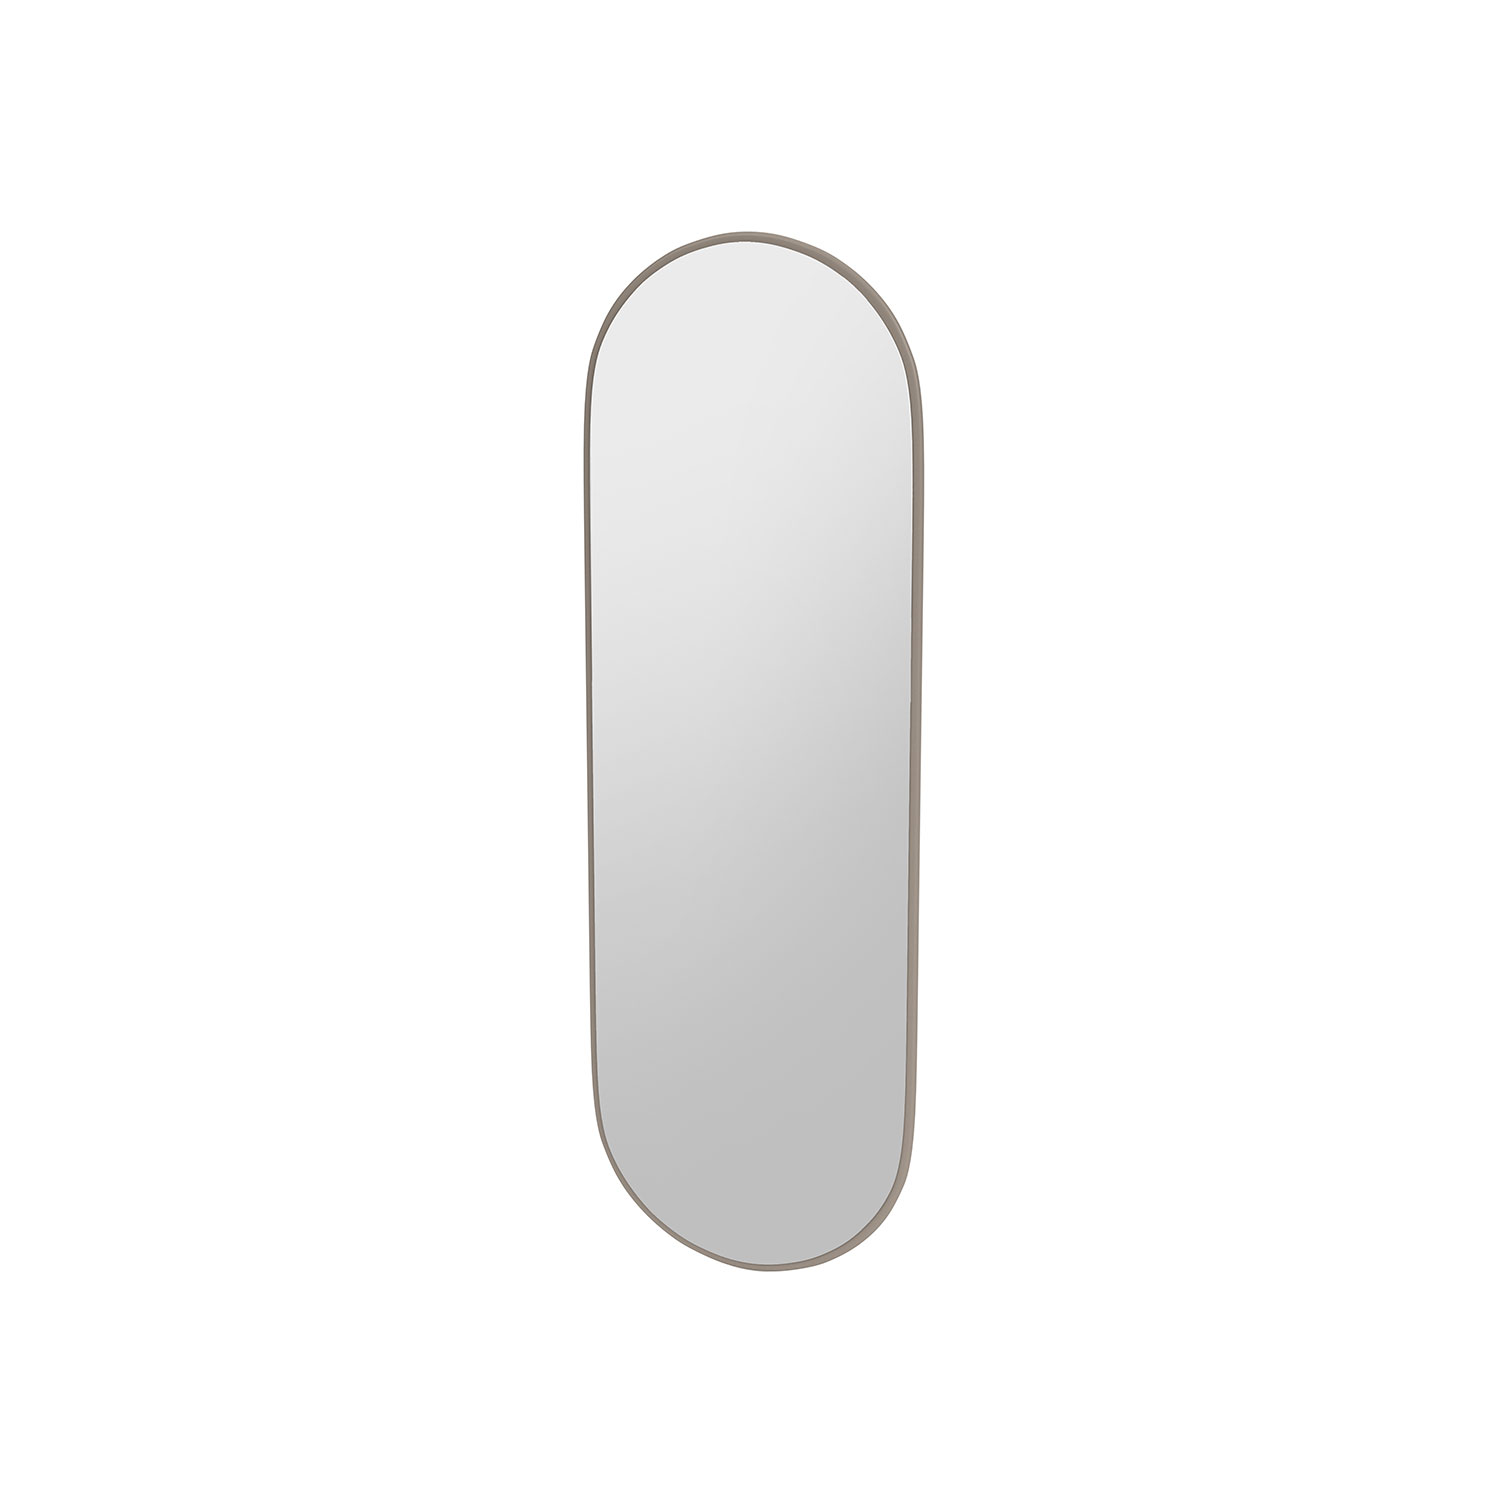 FIGURE oval mirror, Truffle